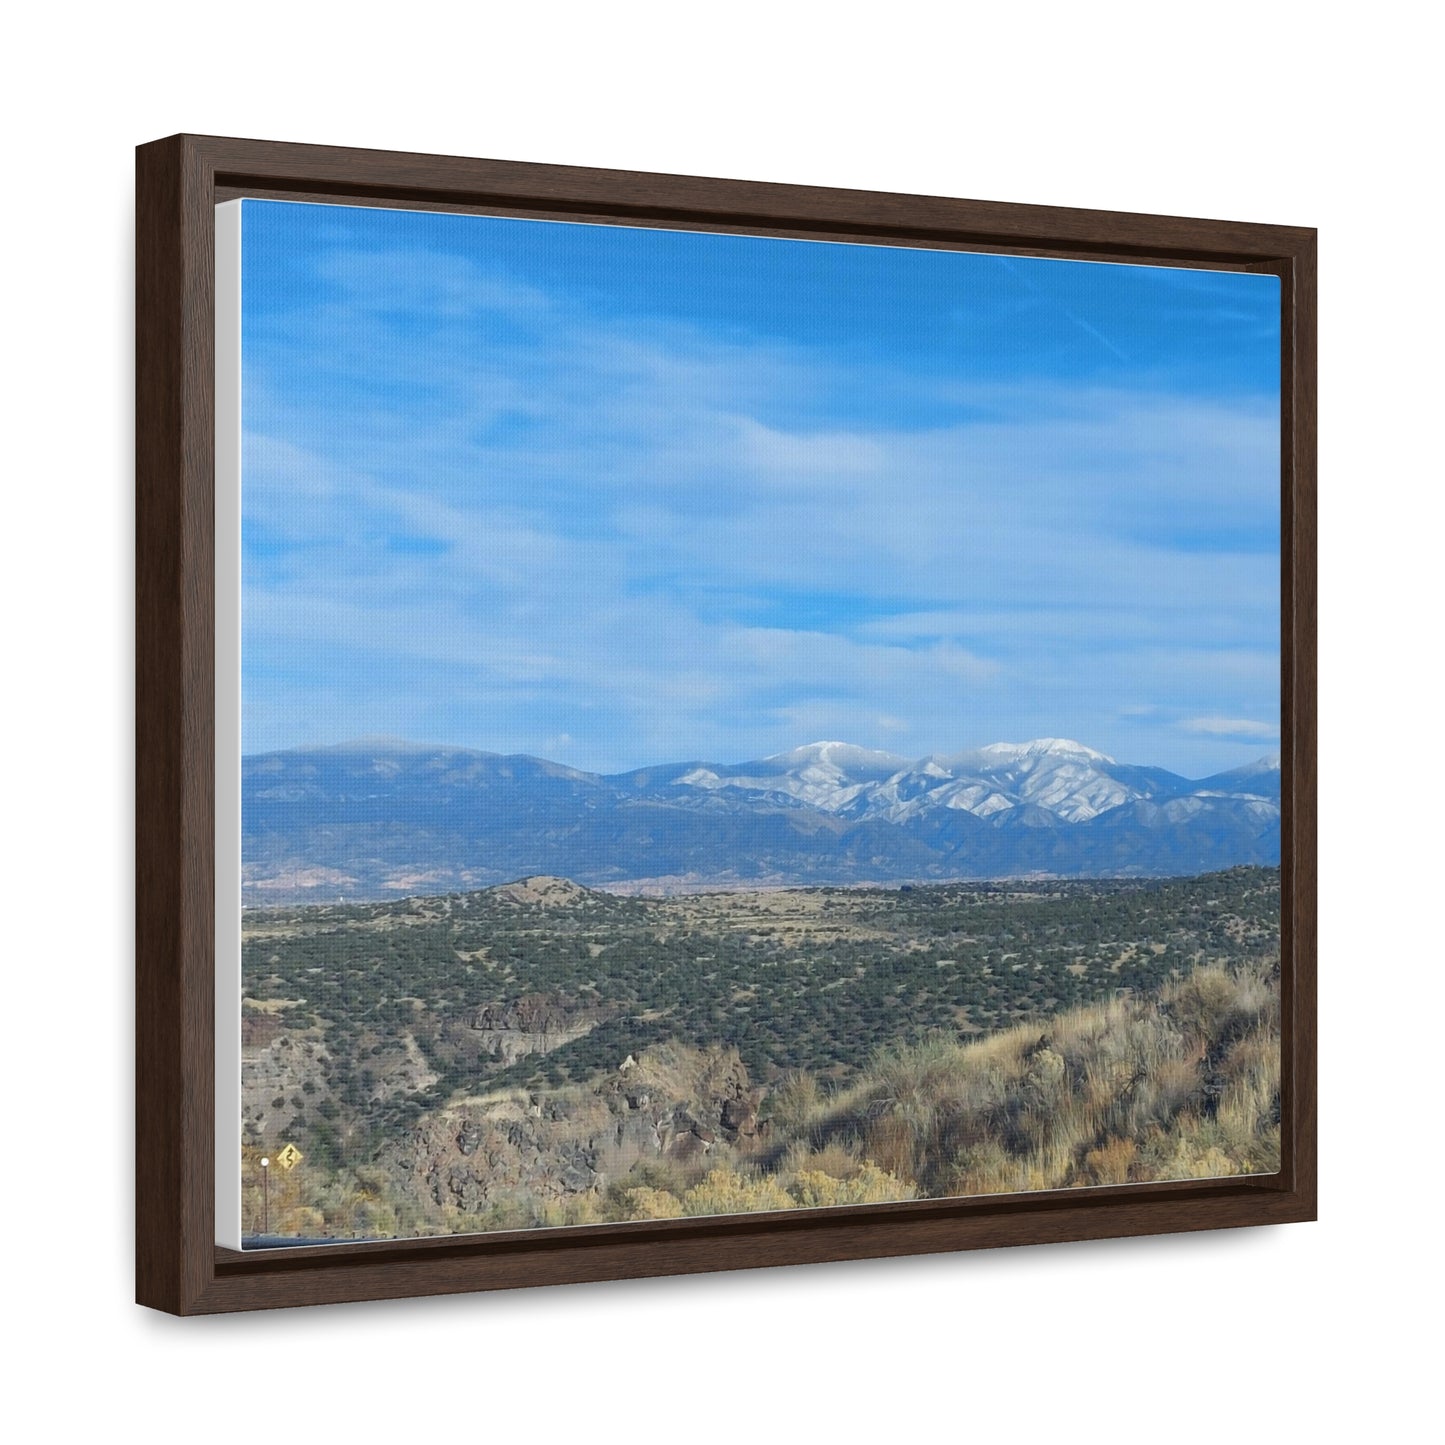 Gorgeous Mountain Views on the Road to Santa Fe Canvas Wraps, Horizontal Frame